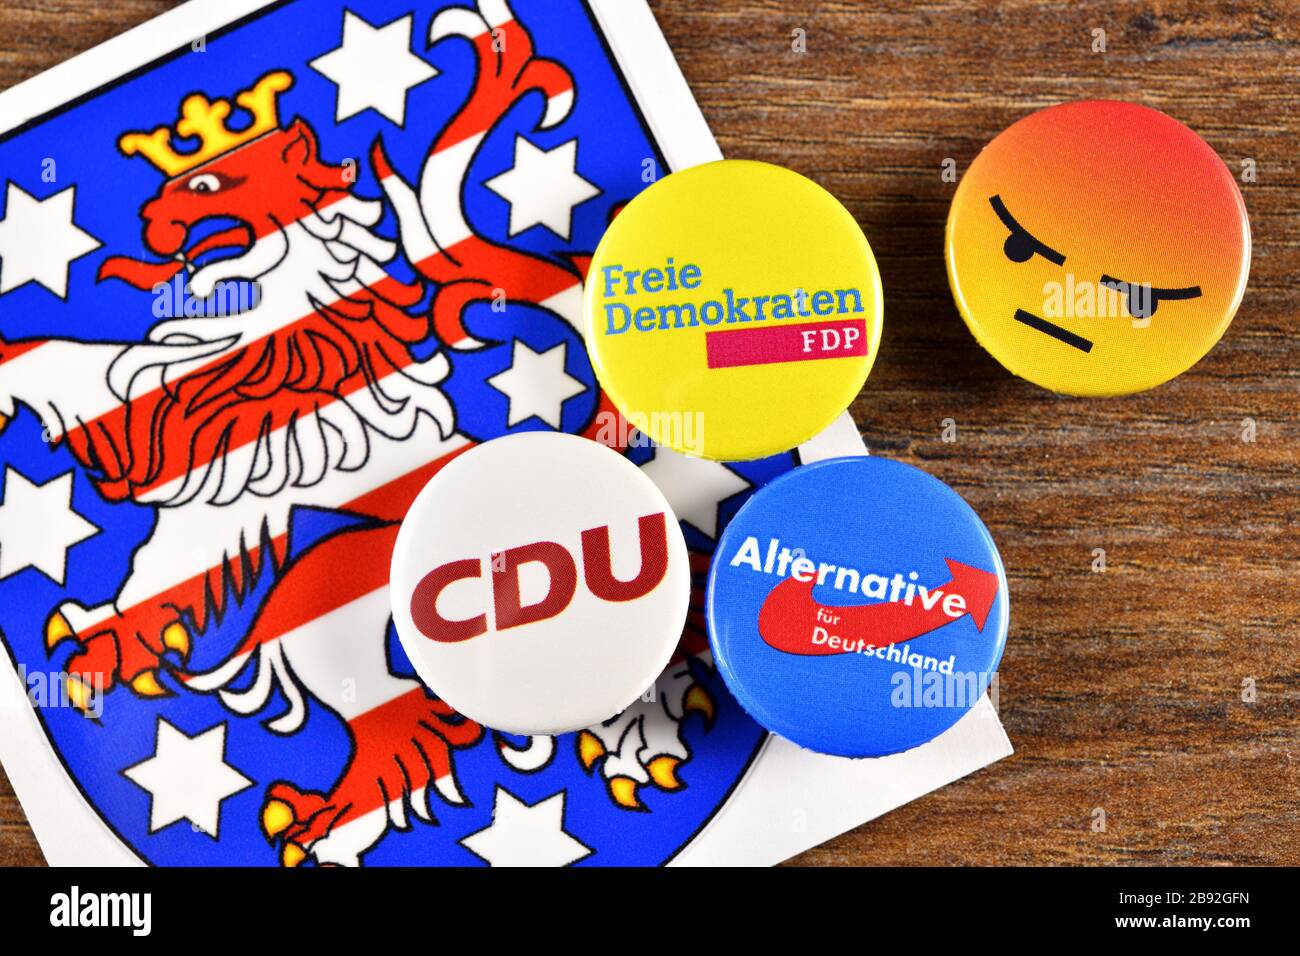 El FDP pone con el apoyo de AFD y CDU al primer ministro en Turingia, foto simbólica, FDP stellt mit Unterstützung von AfD und CDU den Ministerprä Foto de stock